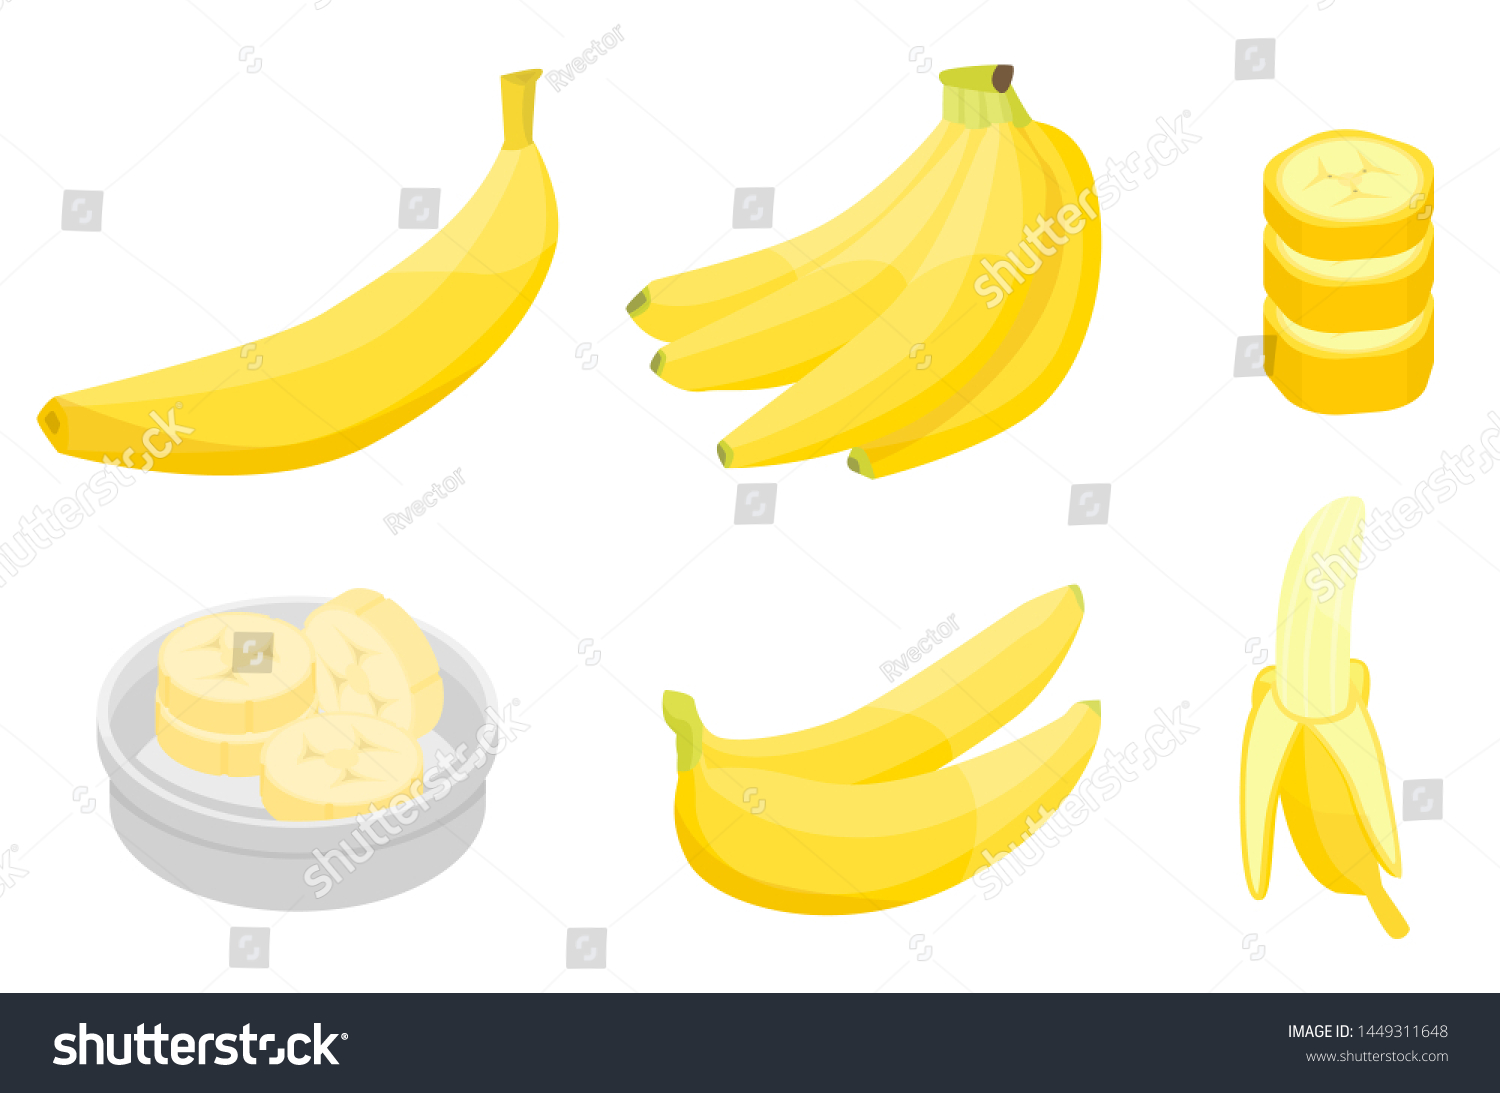 Banana icons set. Isometric set of banana icons for web design isolated on white background #1449311648